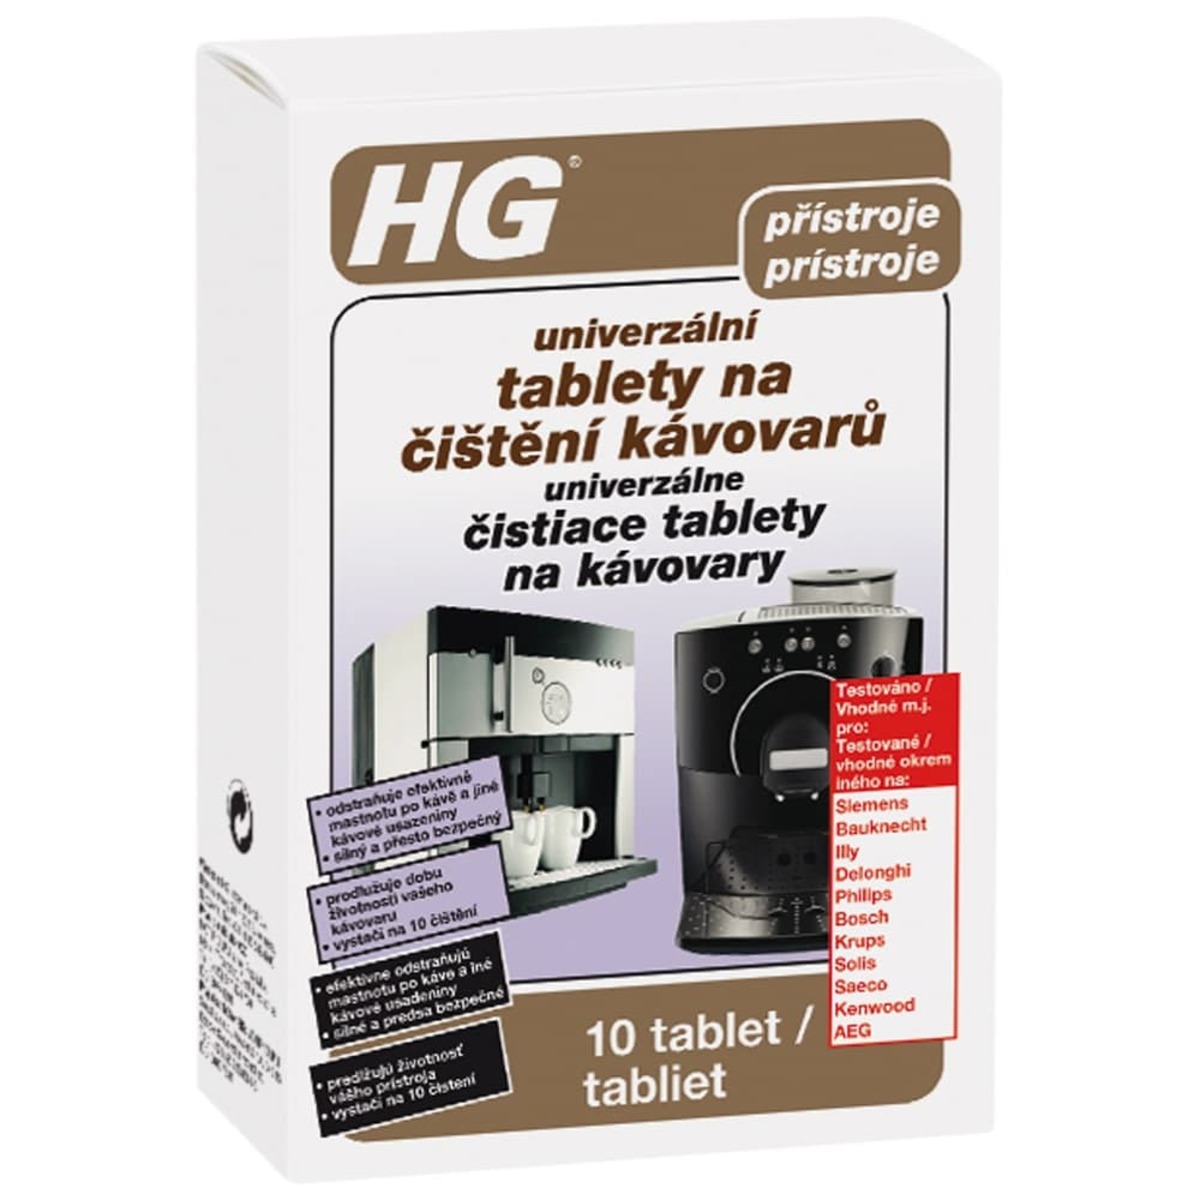 HG univerzální tablety na čištění kávovarů HGUTCK HG